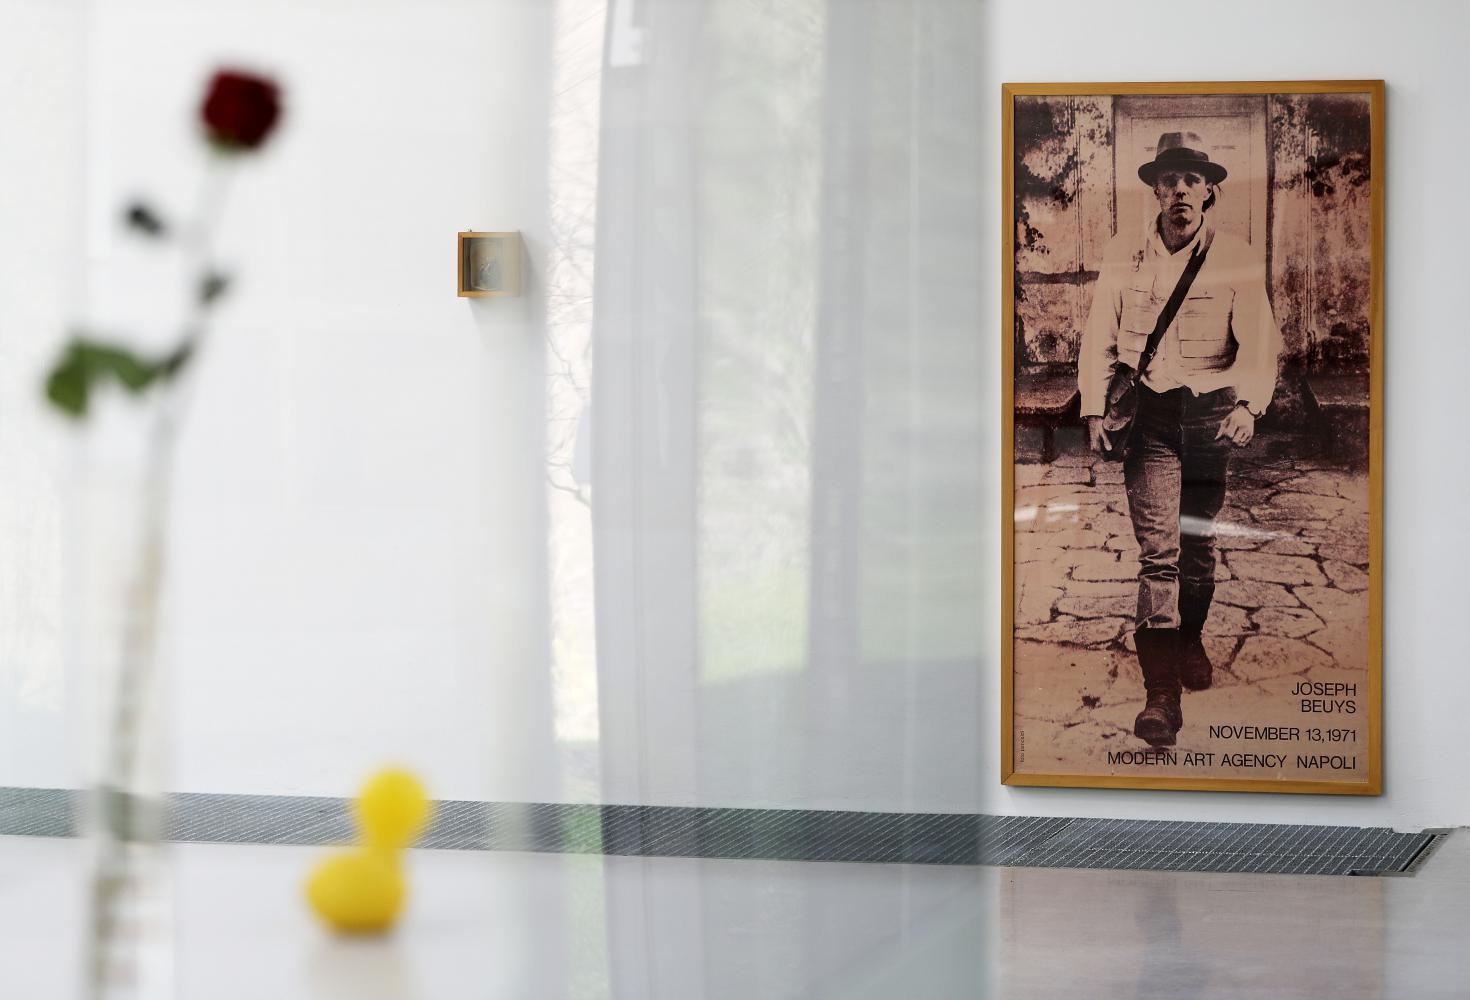 Das Bild "La rivoluzione siamo Noi", das Joseph Beuys zeigt, hängt hinter Vitrinen an der Wand. Zum 100. Geburtstag hat der Künstler Tony Cragg über 20 Werke von Beuys für die Ausstellung "Joseph Beuys - Perpetual Motion" zusammengestellt. Die Ausstellung findet vom 28.03. bis 20.06.2021 im Skulpturenpark statt